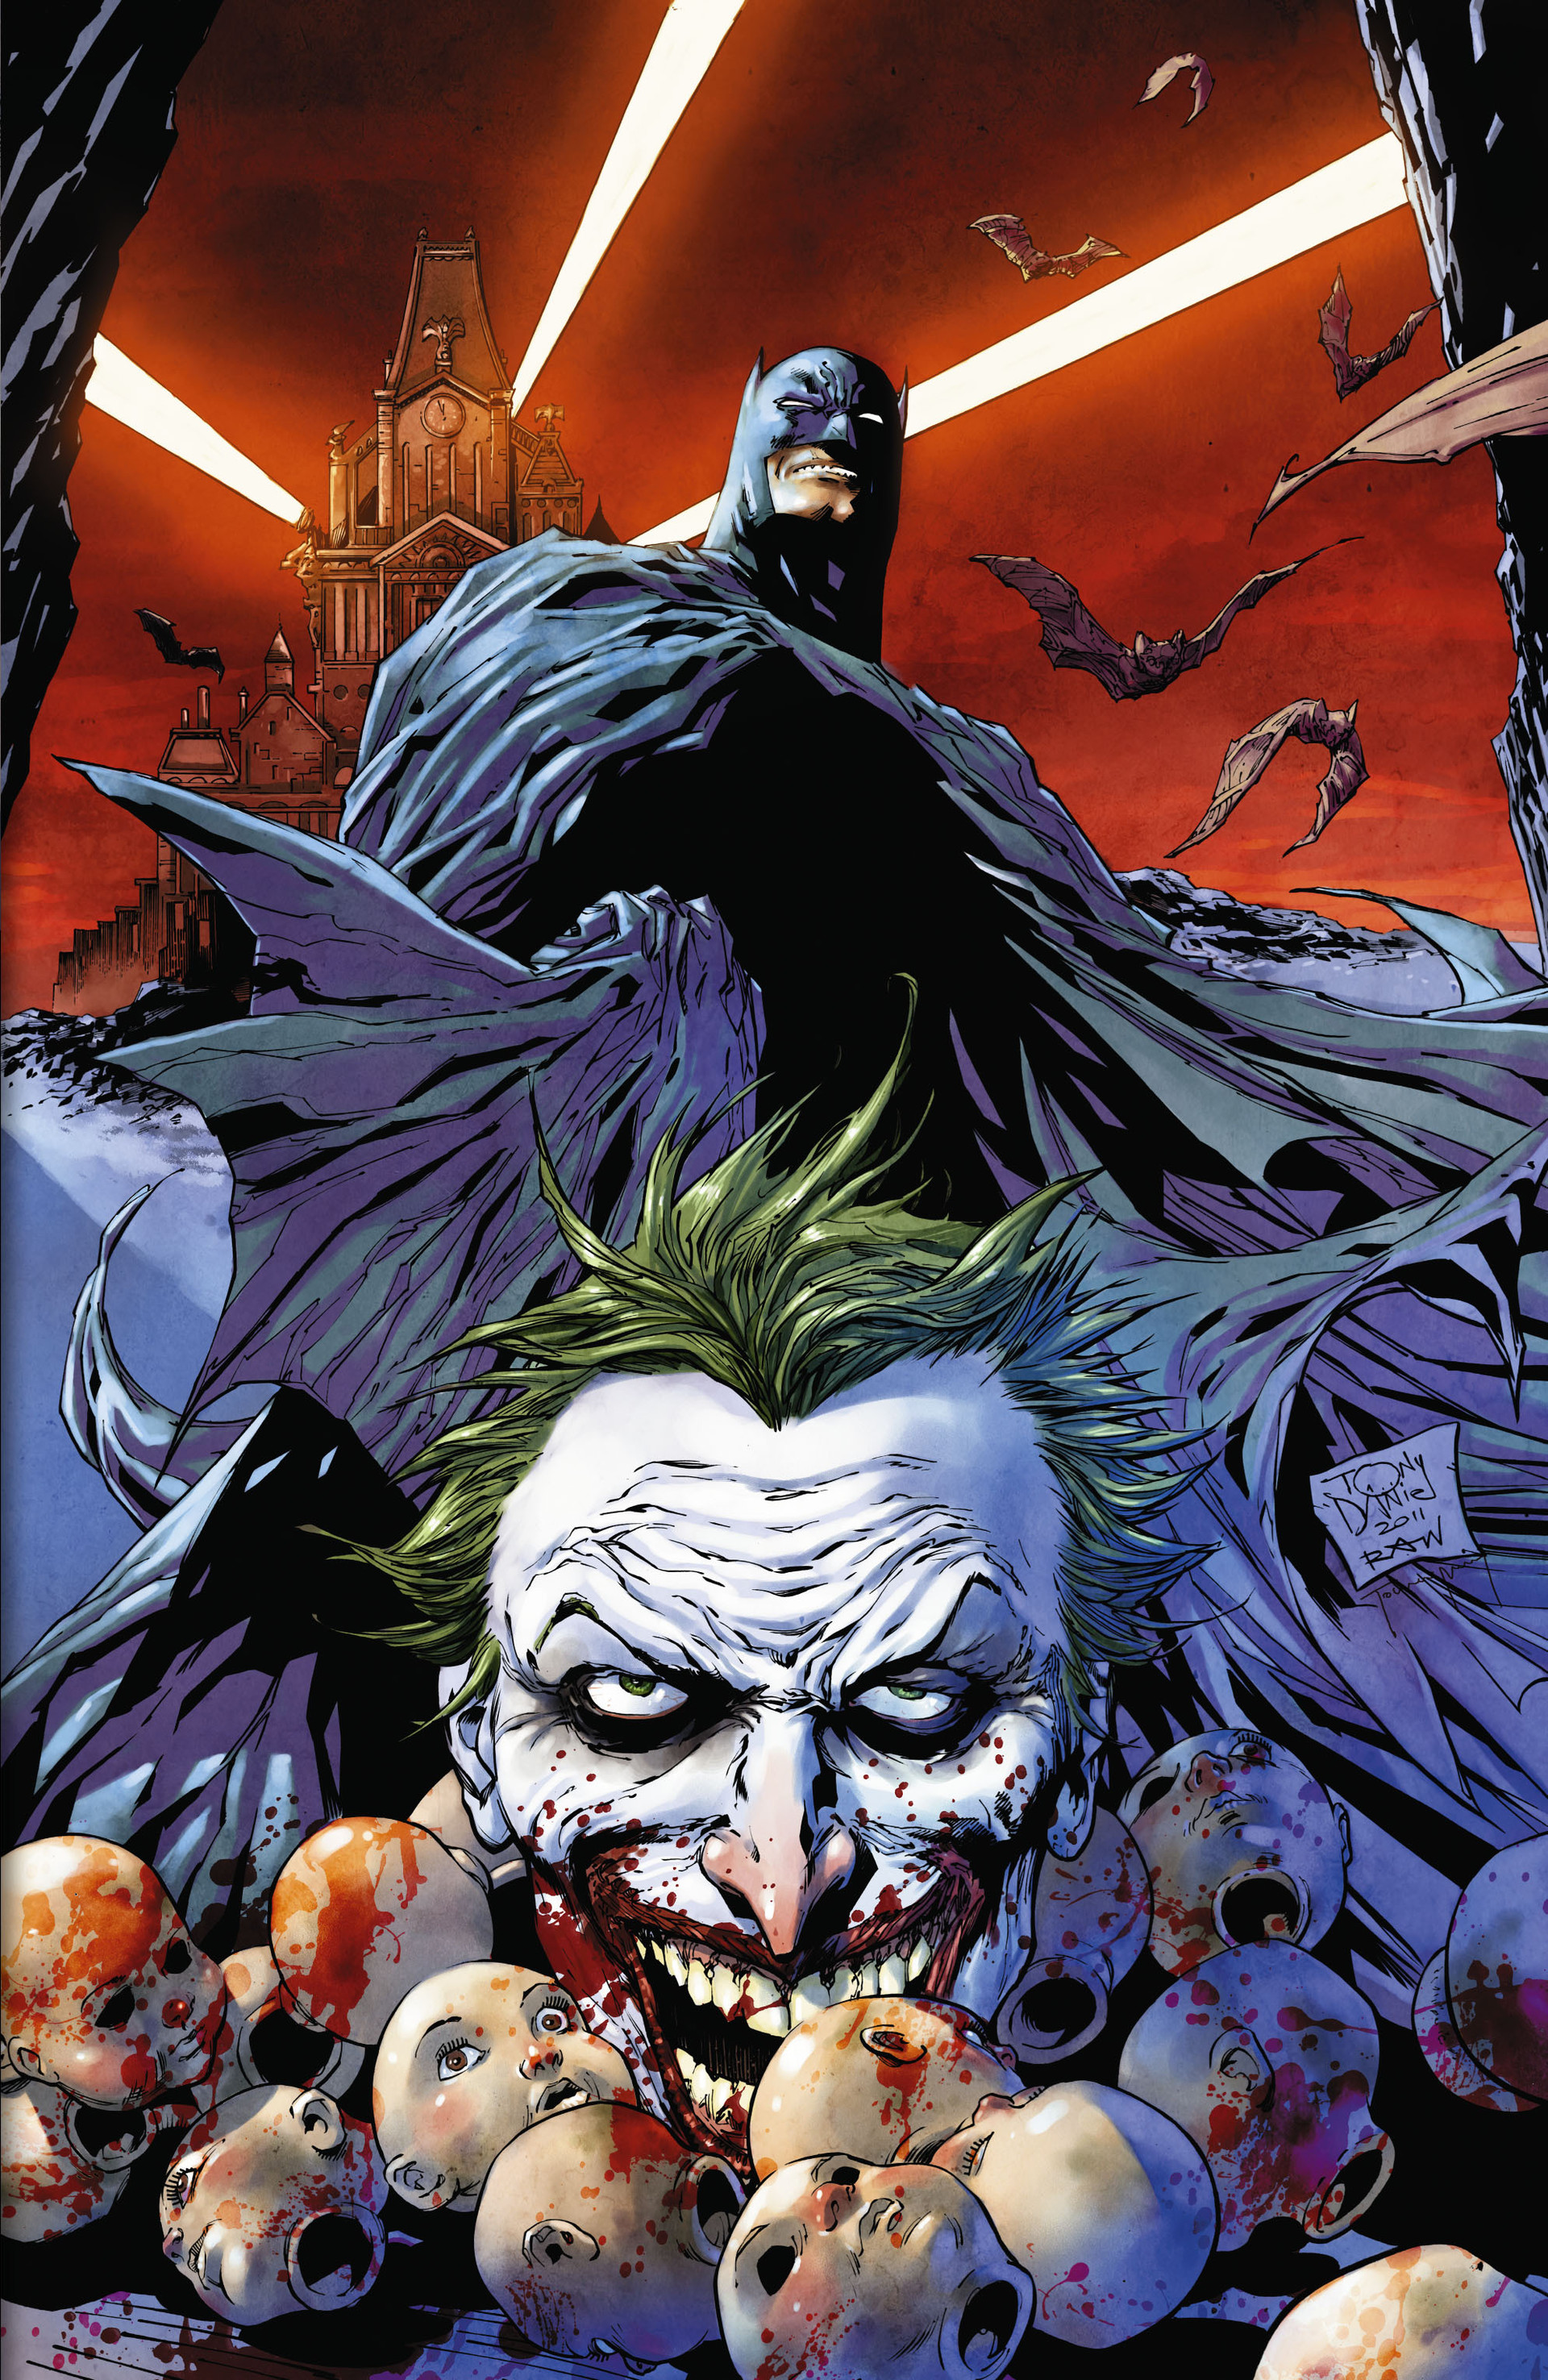 Read online Batman: Detective Comics comic -  Issue # TPB 1 - 5